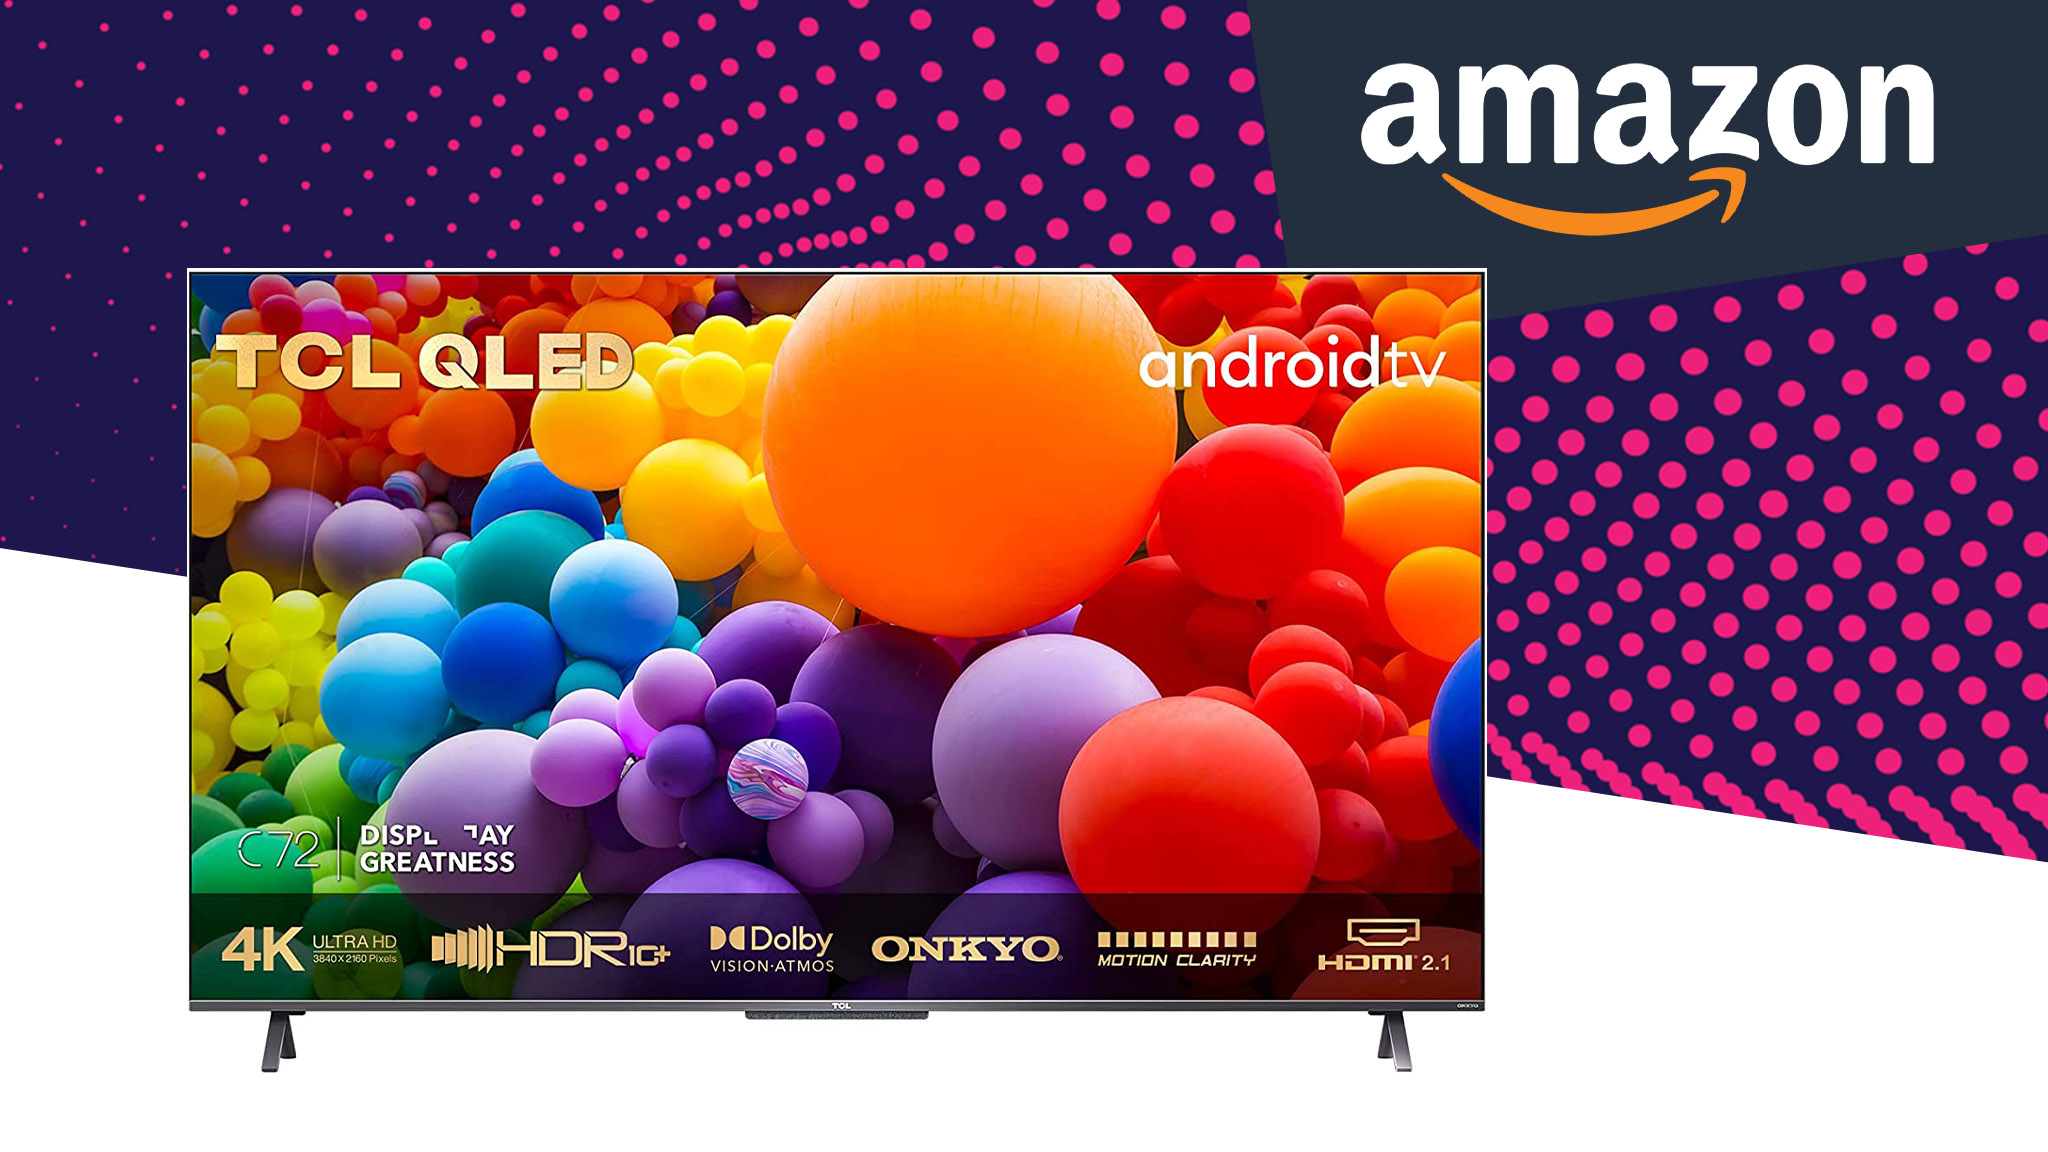 Amazon-Angebot: Großer TCL Smart-TV rund 300 Euro günstiger! - COMPUTER BILD